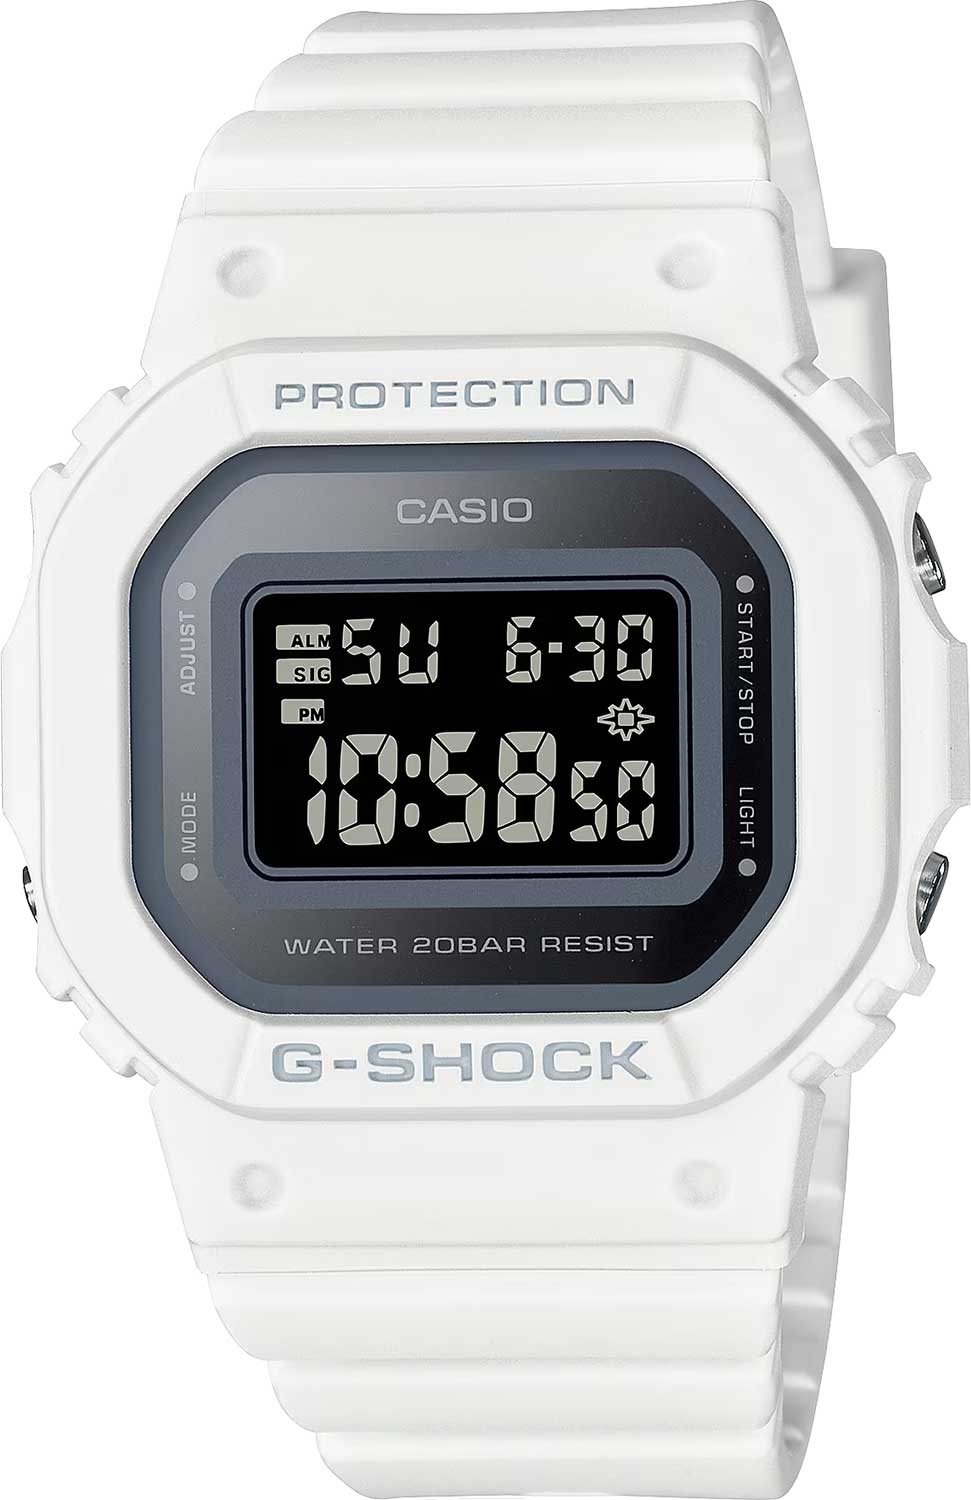    Casio G-SHOCK GMD-S5600-7  